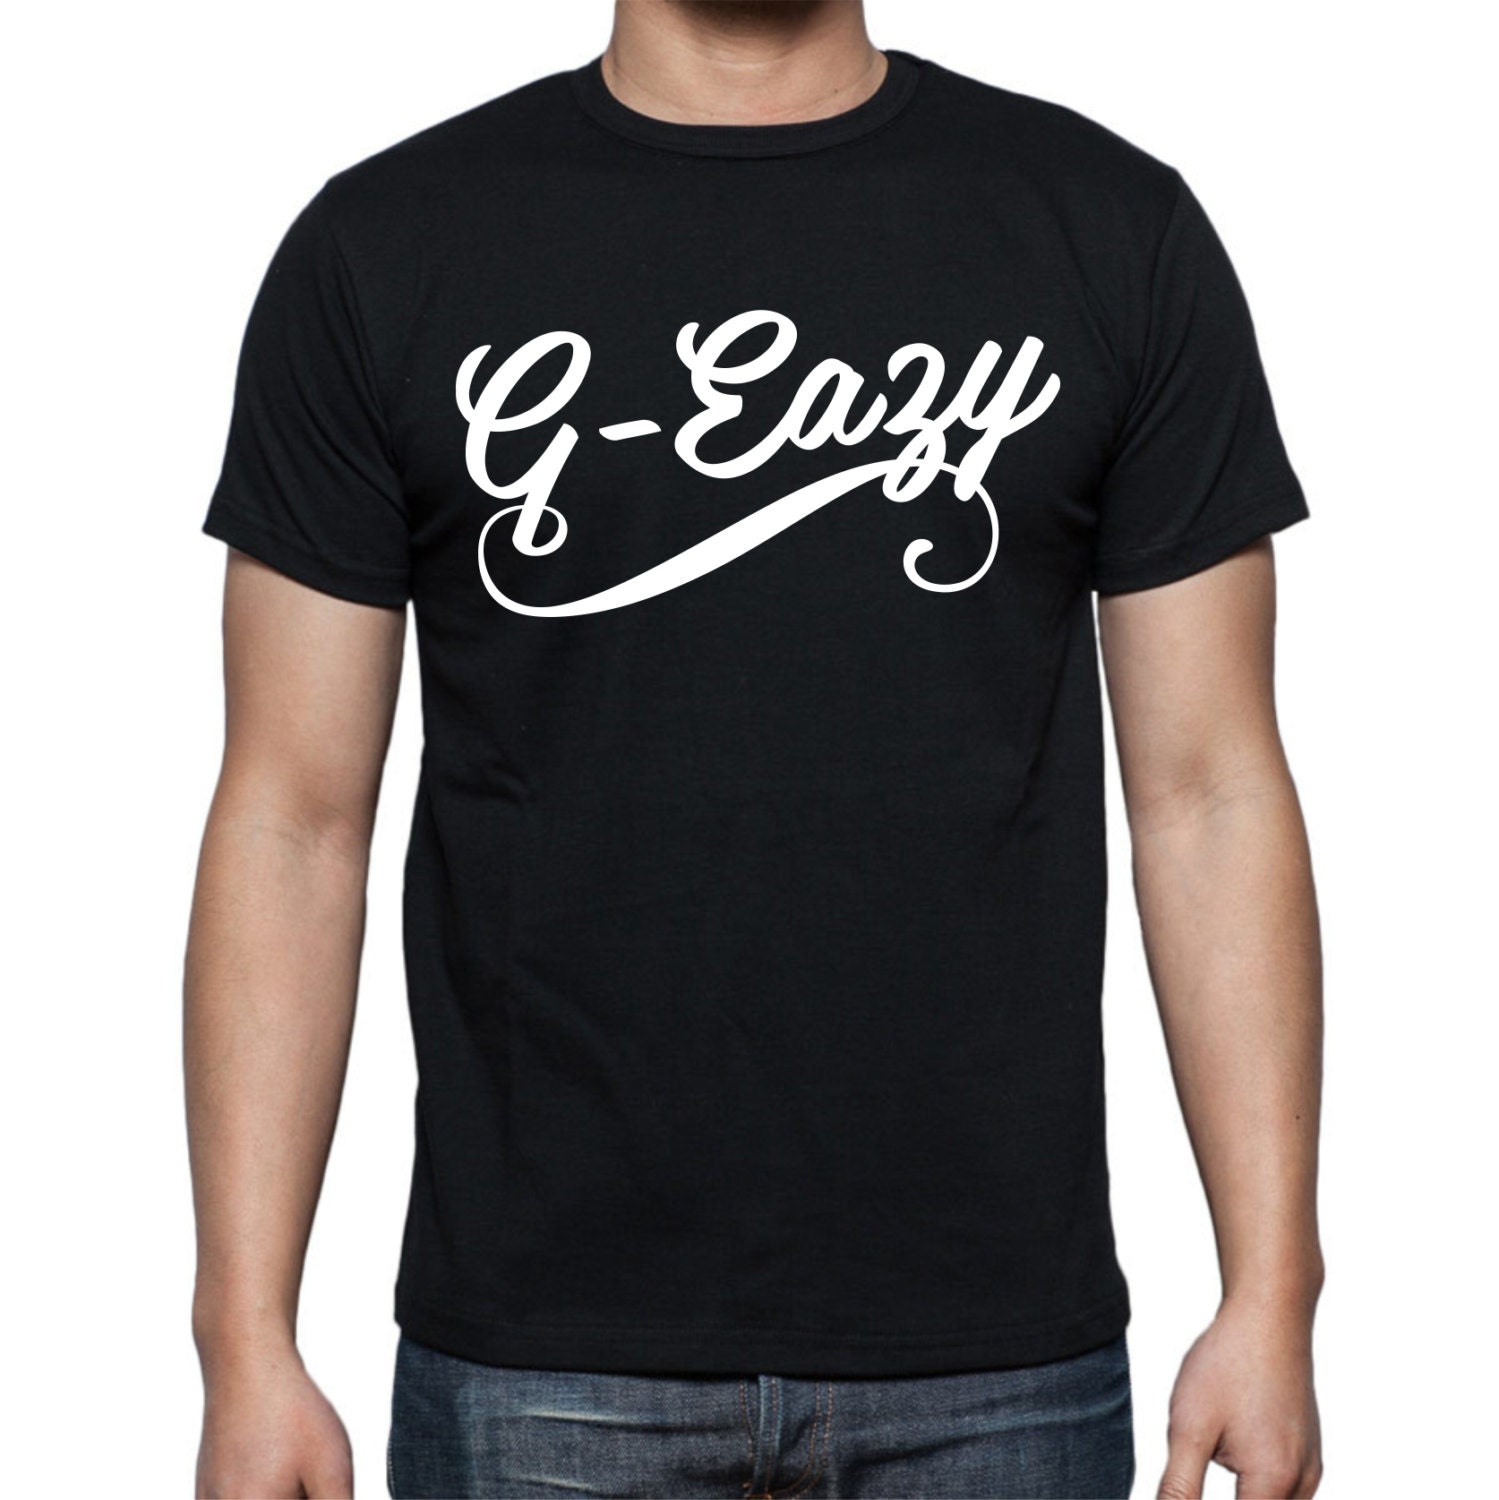 G-Eazy T-shirt by WeCustomOnline7 on Etsy1499 x 1500